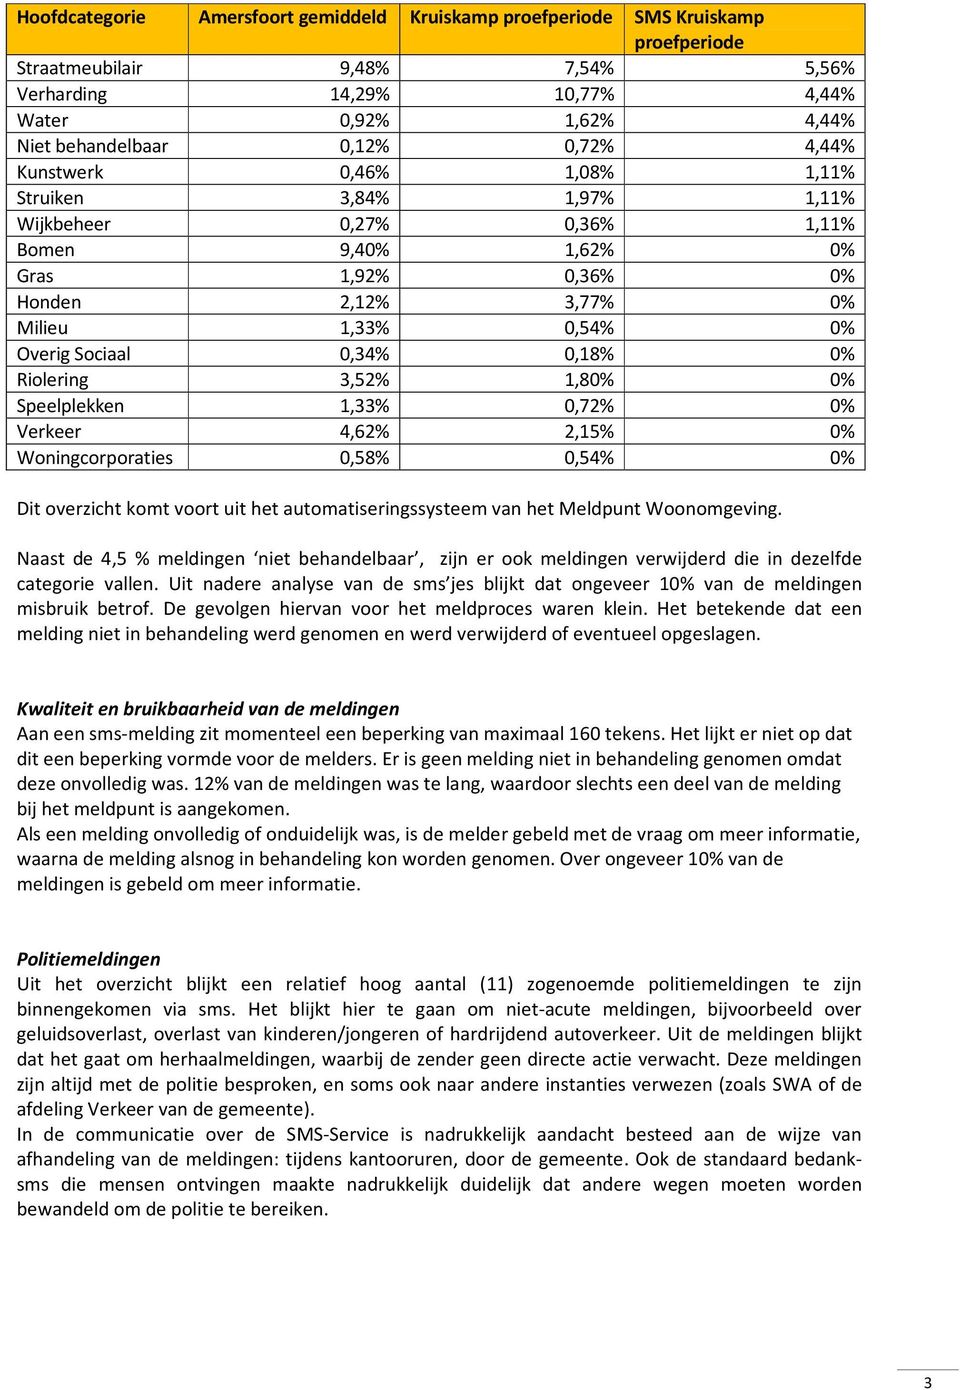 0,34% 0,18% 0% Riolering 3,52% 1,80% 0% Speelplekken 1,33% 0,72% 0% Verkeer 4,62% 2,15% 0% Woningcorporaties 0,58% 0,54% 0% Dit overzicht komt voort uit het automatiseringssysteem van het Meldpunt